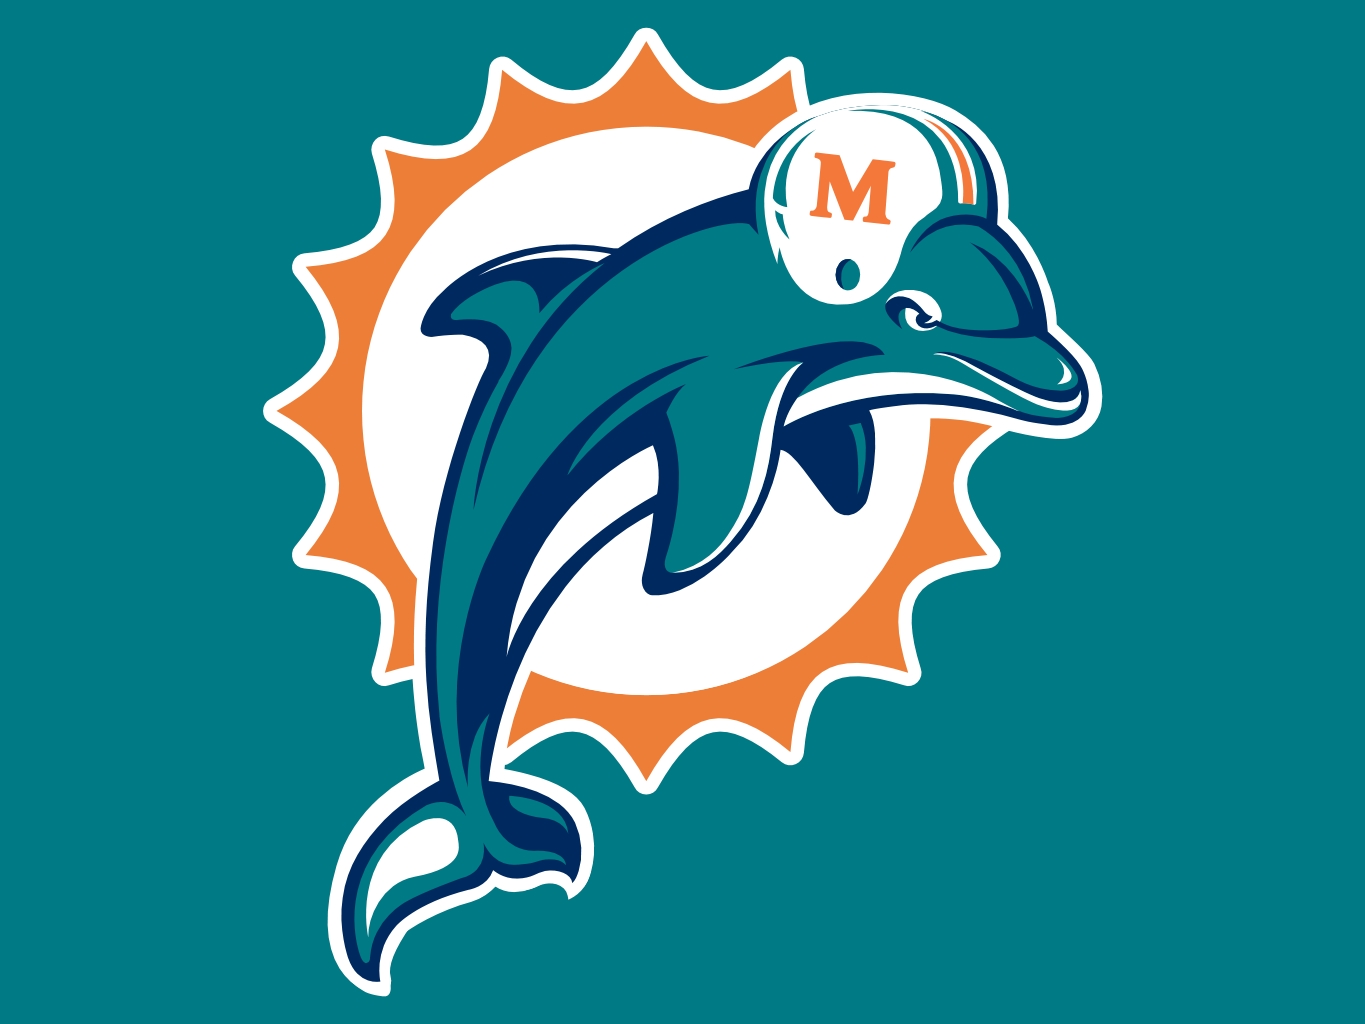 Miami Dolphins at 50: Logos